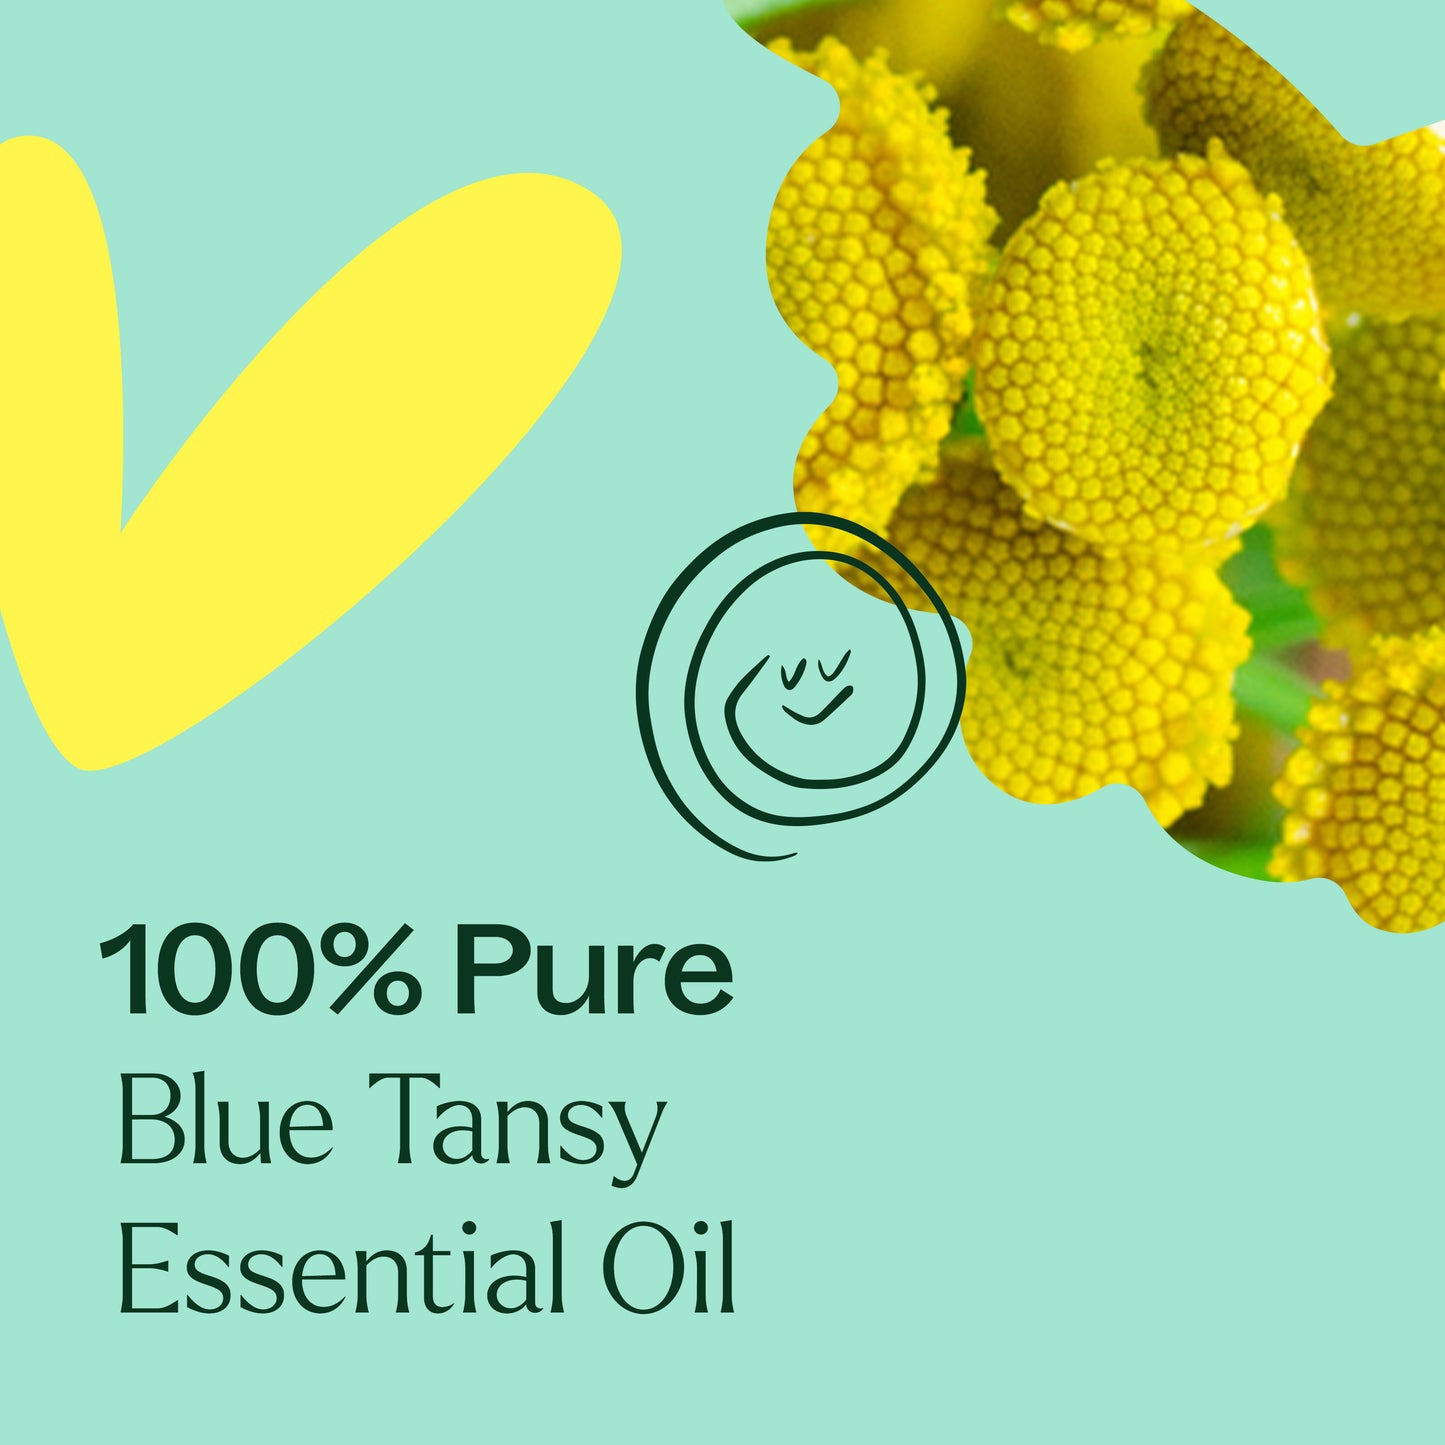 100% pure Blue Tansy Essential Oil